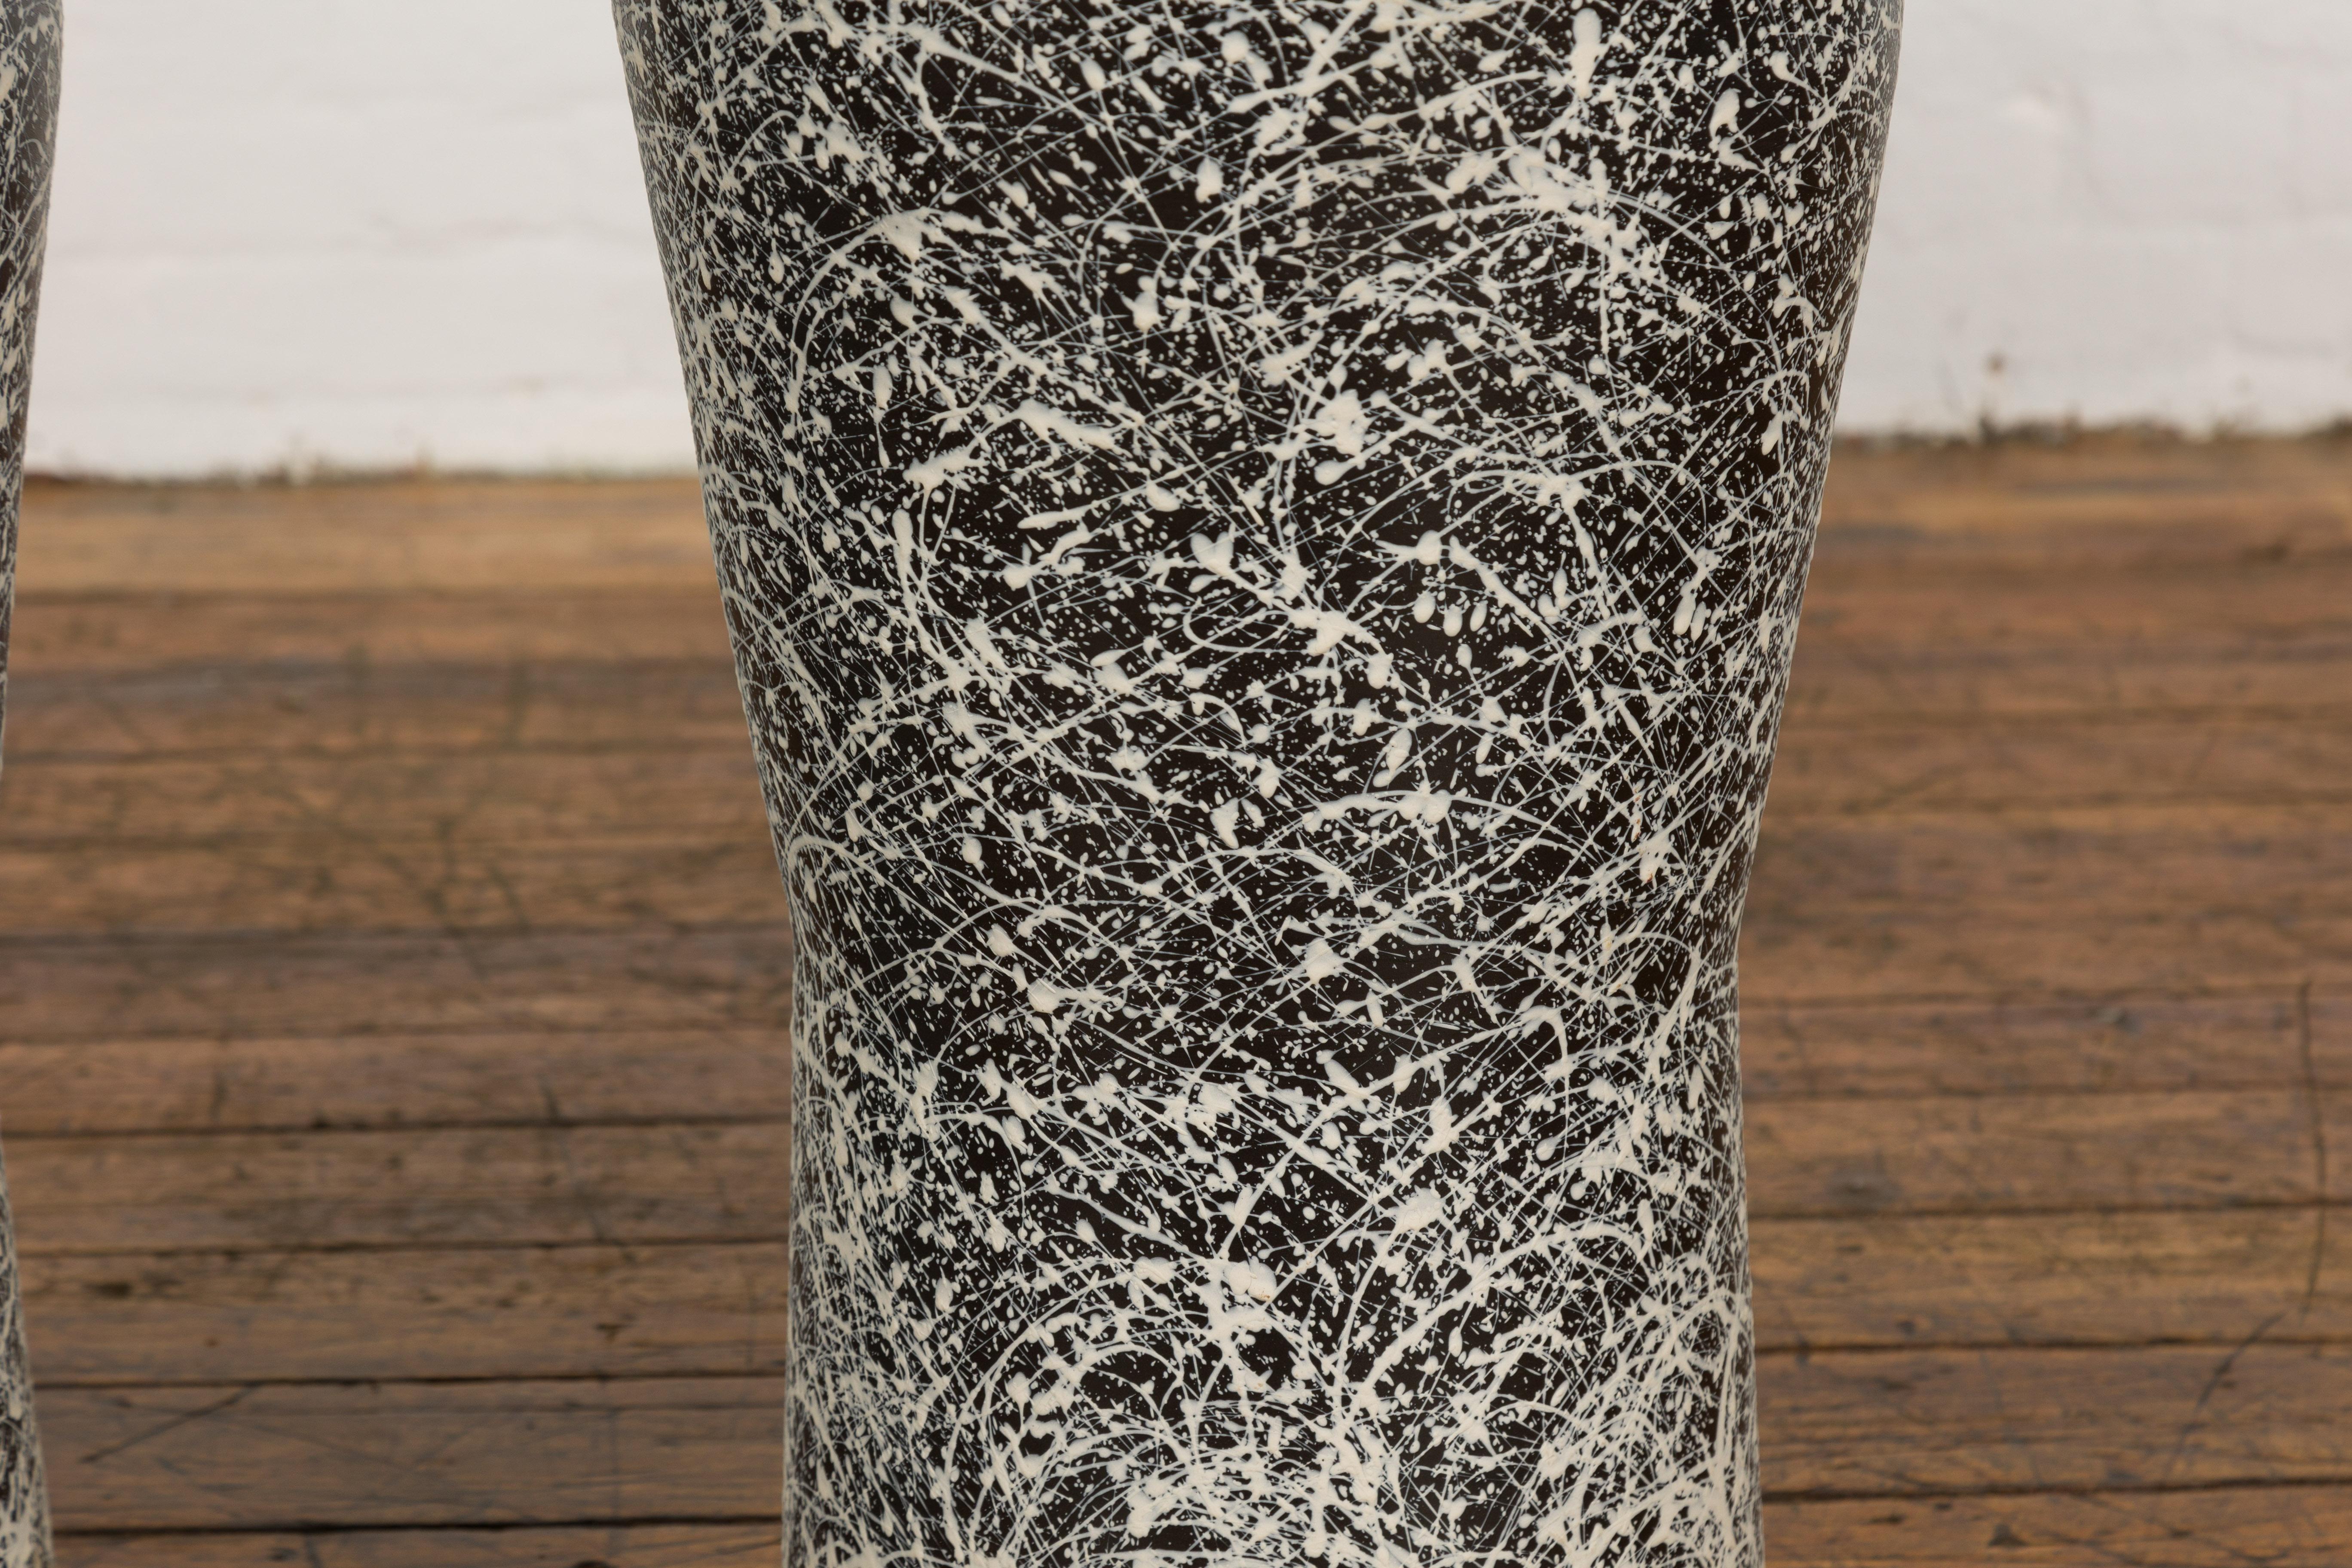 Pair of Textured Black & White Spattered Ceramic Vases For Sale 1